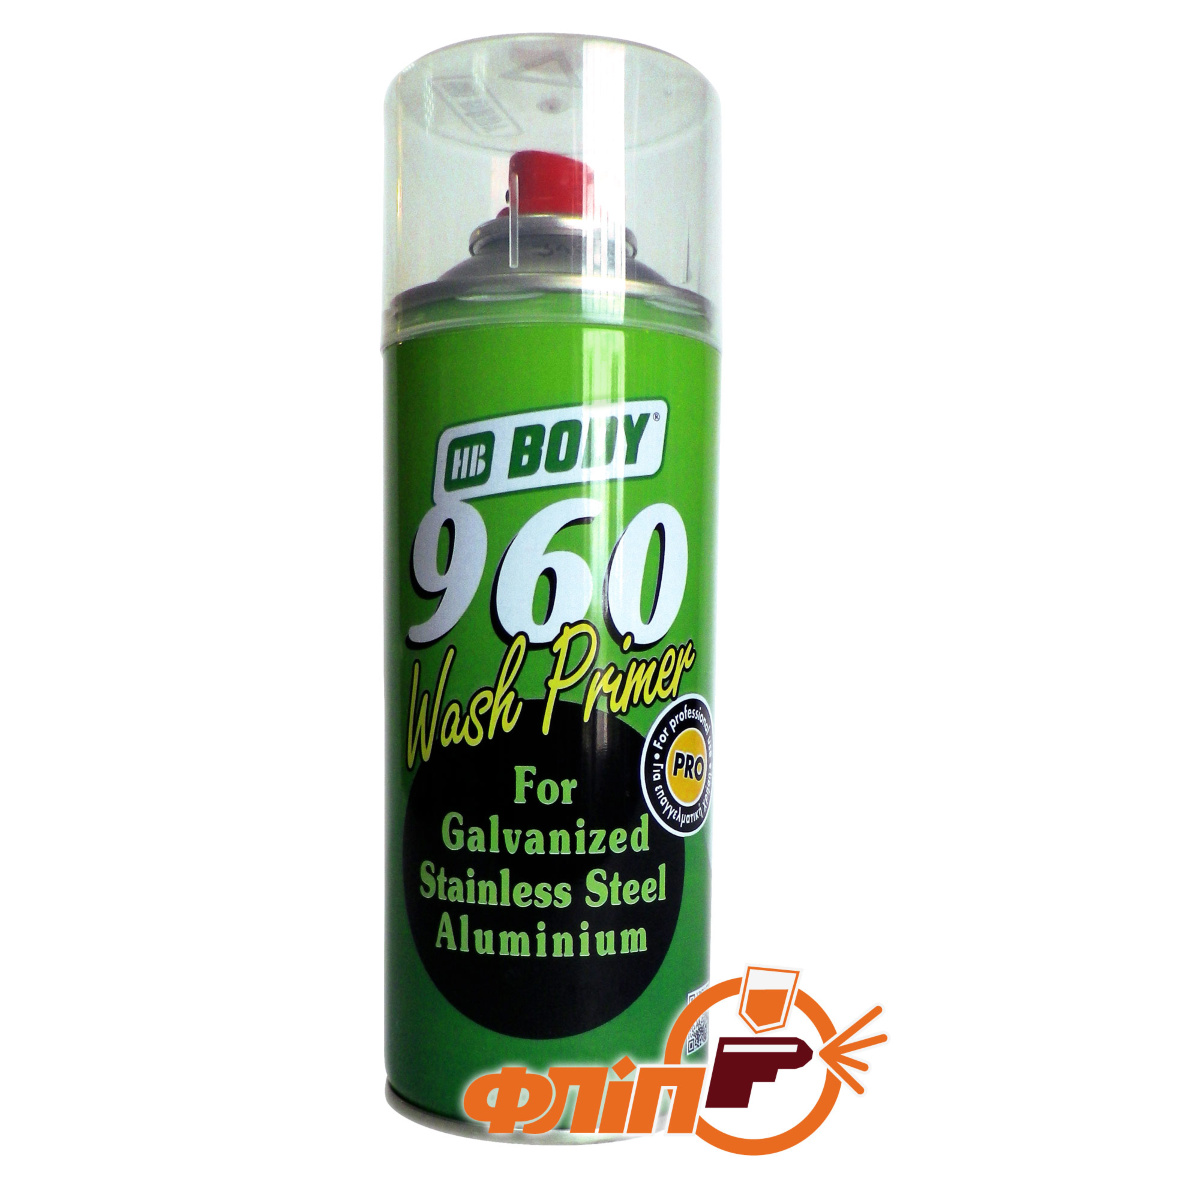  аэрозольный кислотный Body 960 WASH PRIMER: , цена .